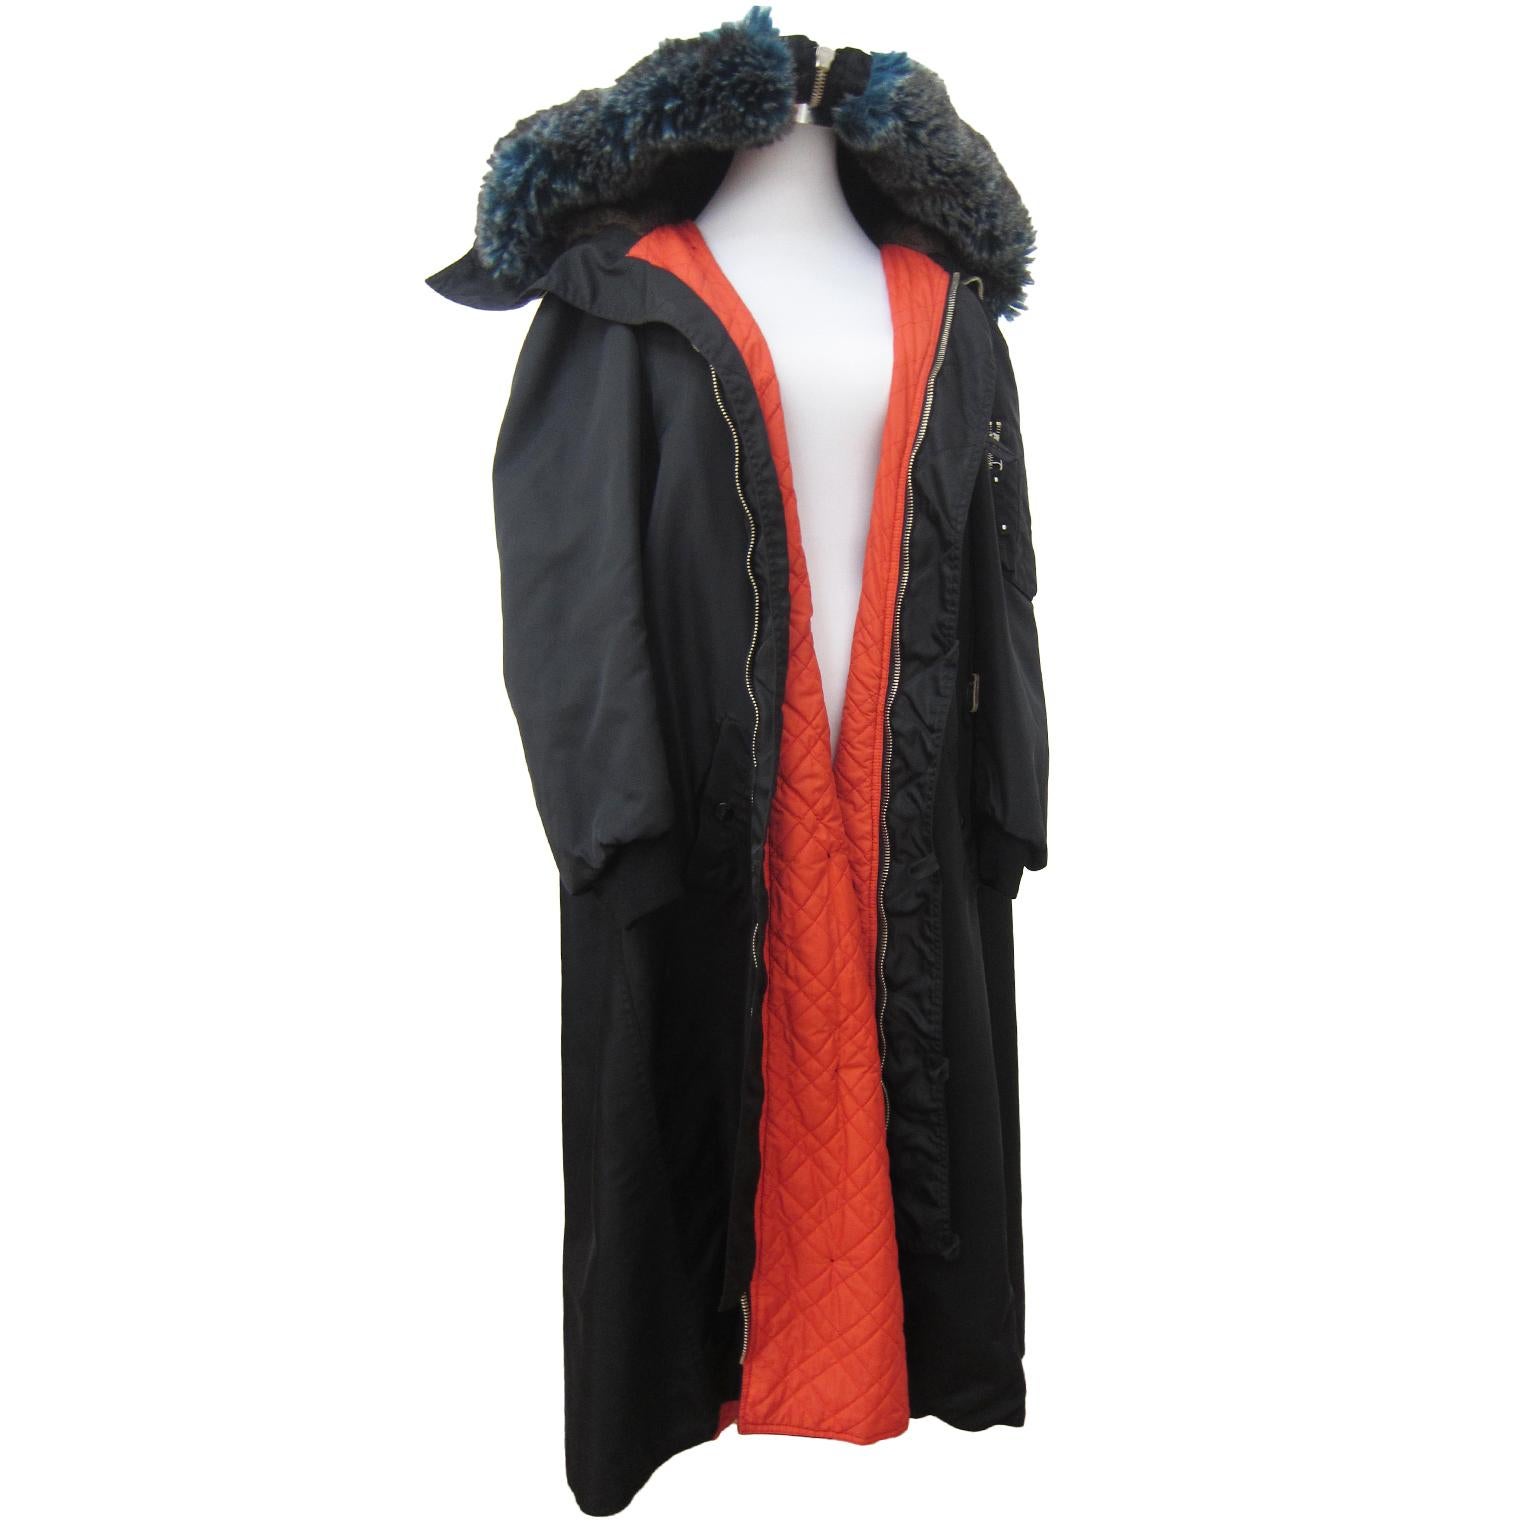 Eine frühe, seltene Jean Paul Gaultier schwarze Bomberjacke / A-Linien-Mantel aus circa 1980er Jahren.
Übergroßer blauer und brauner Kunstpelzmantel mit Kapuze, der schönes Volumen verleiht. Mit leuchtend orangefarbenem Futter und Taschen. Passt wie